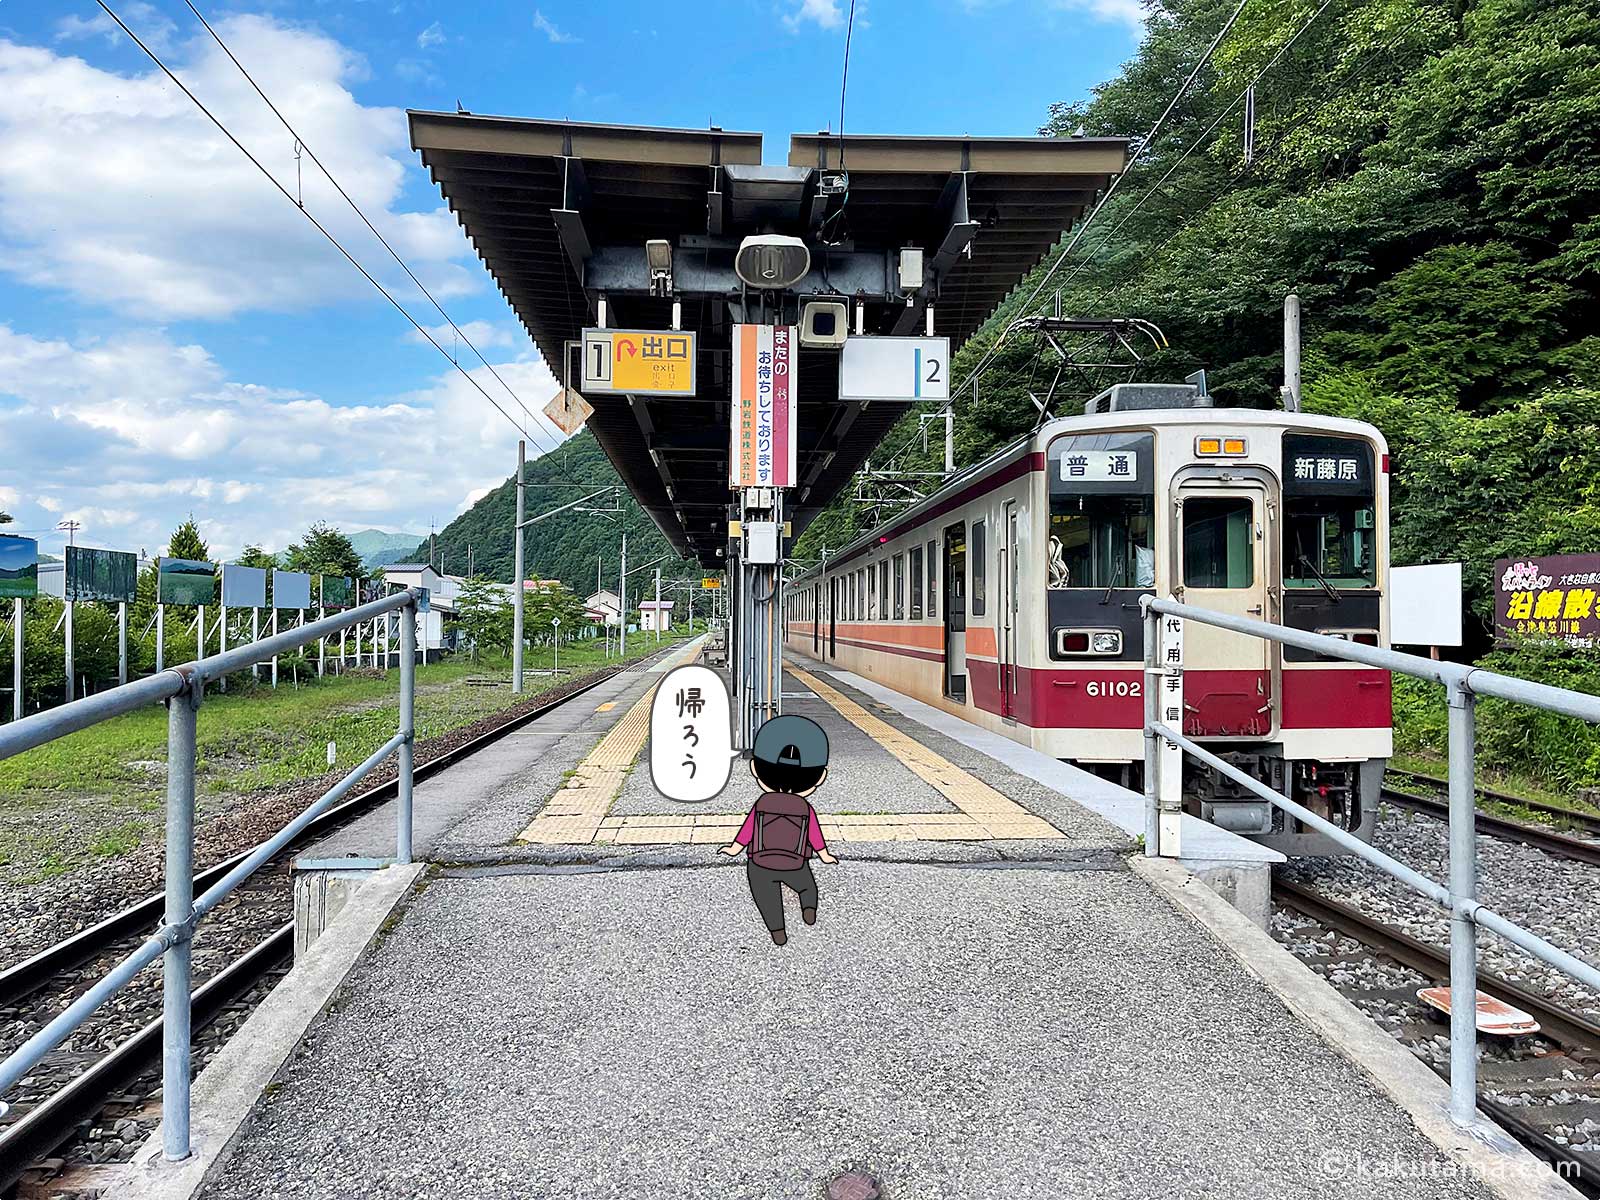 会津高原尾瀬口駅の電車写真と登山者のイラスト2